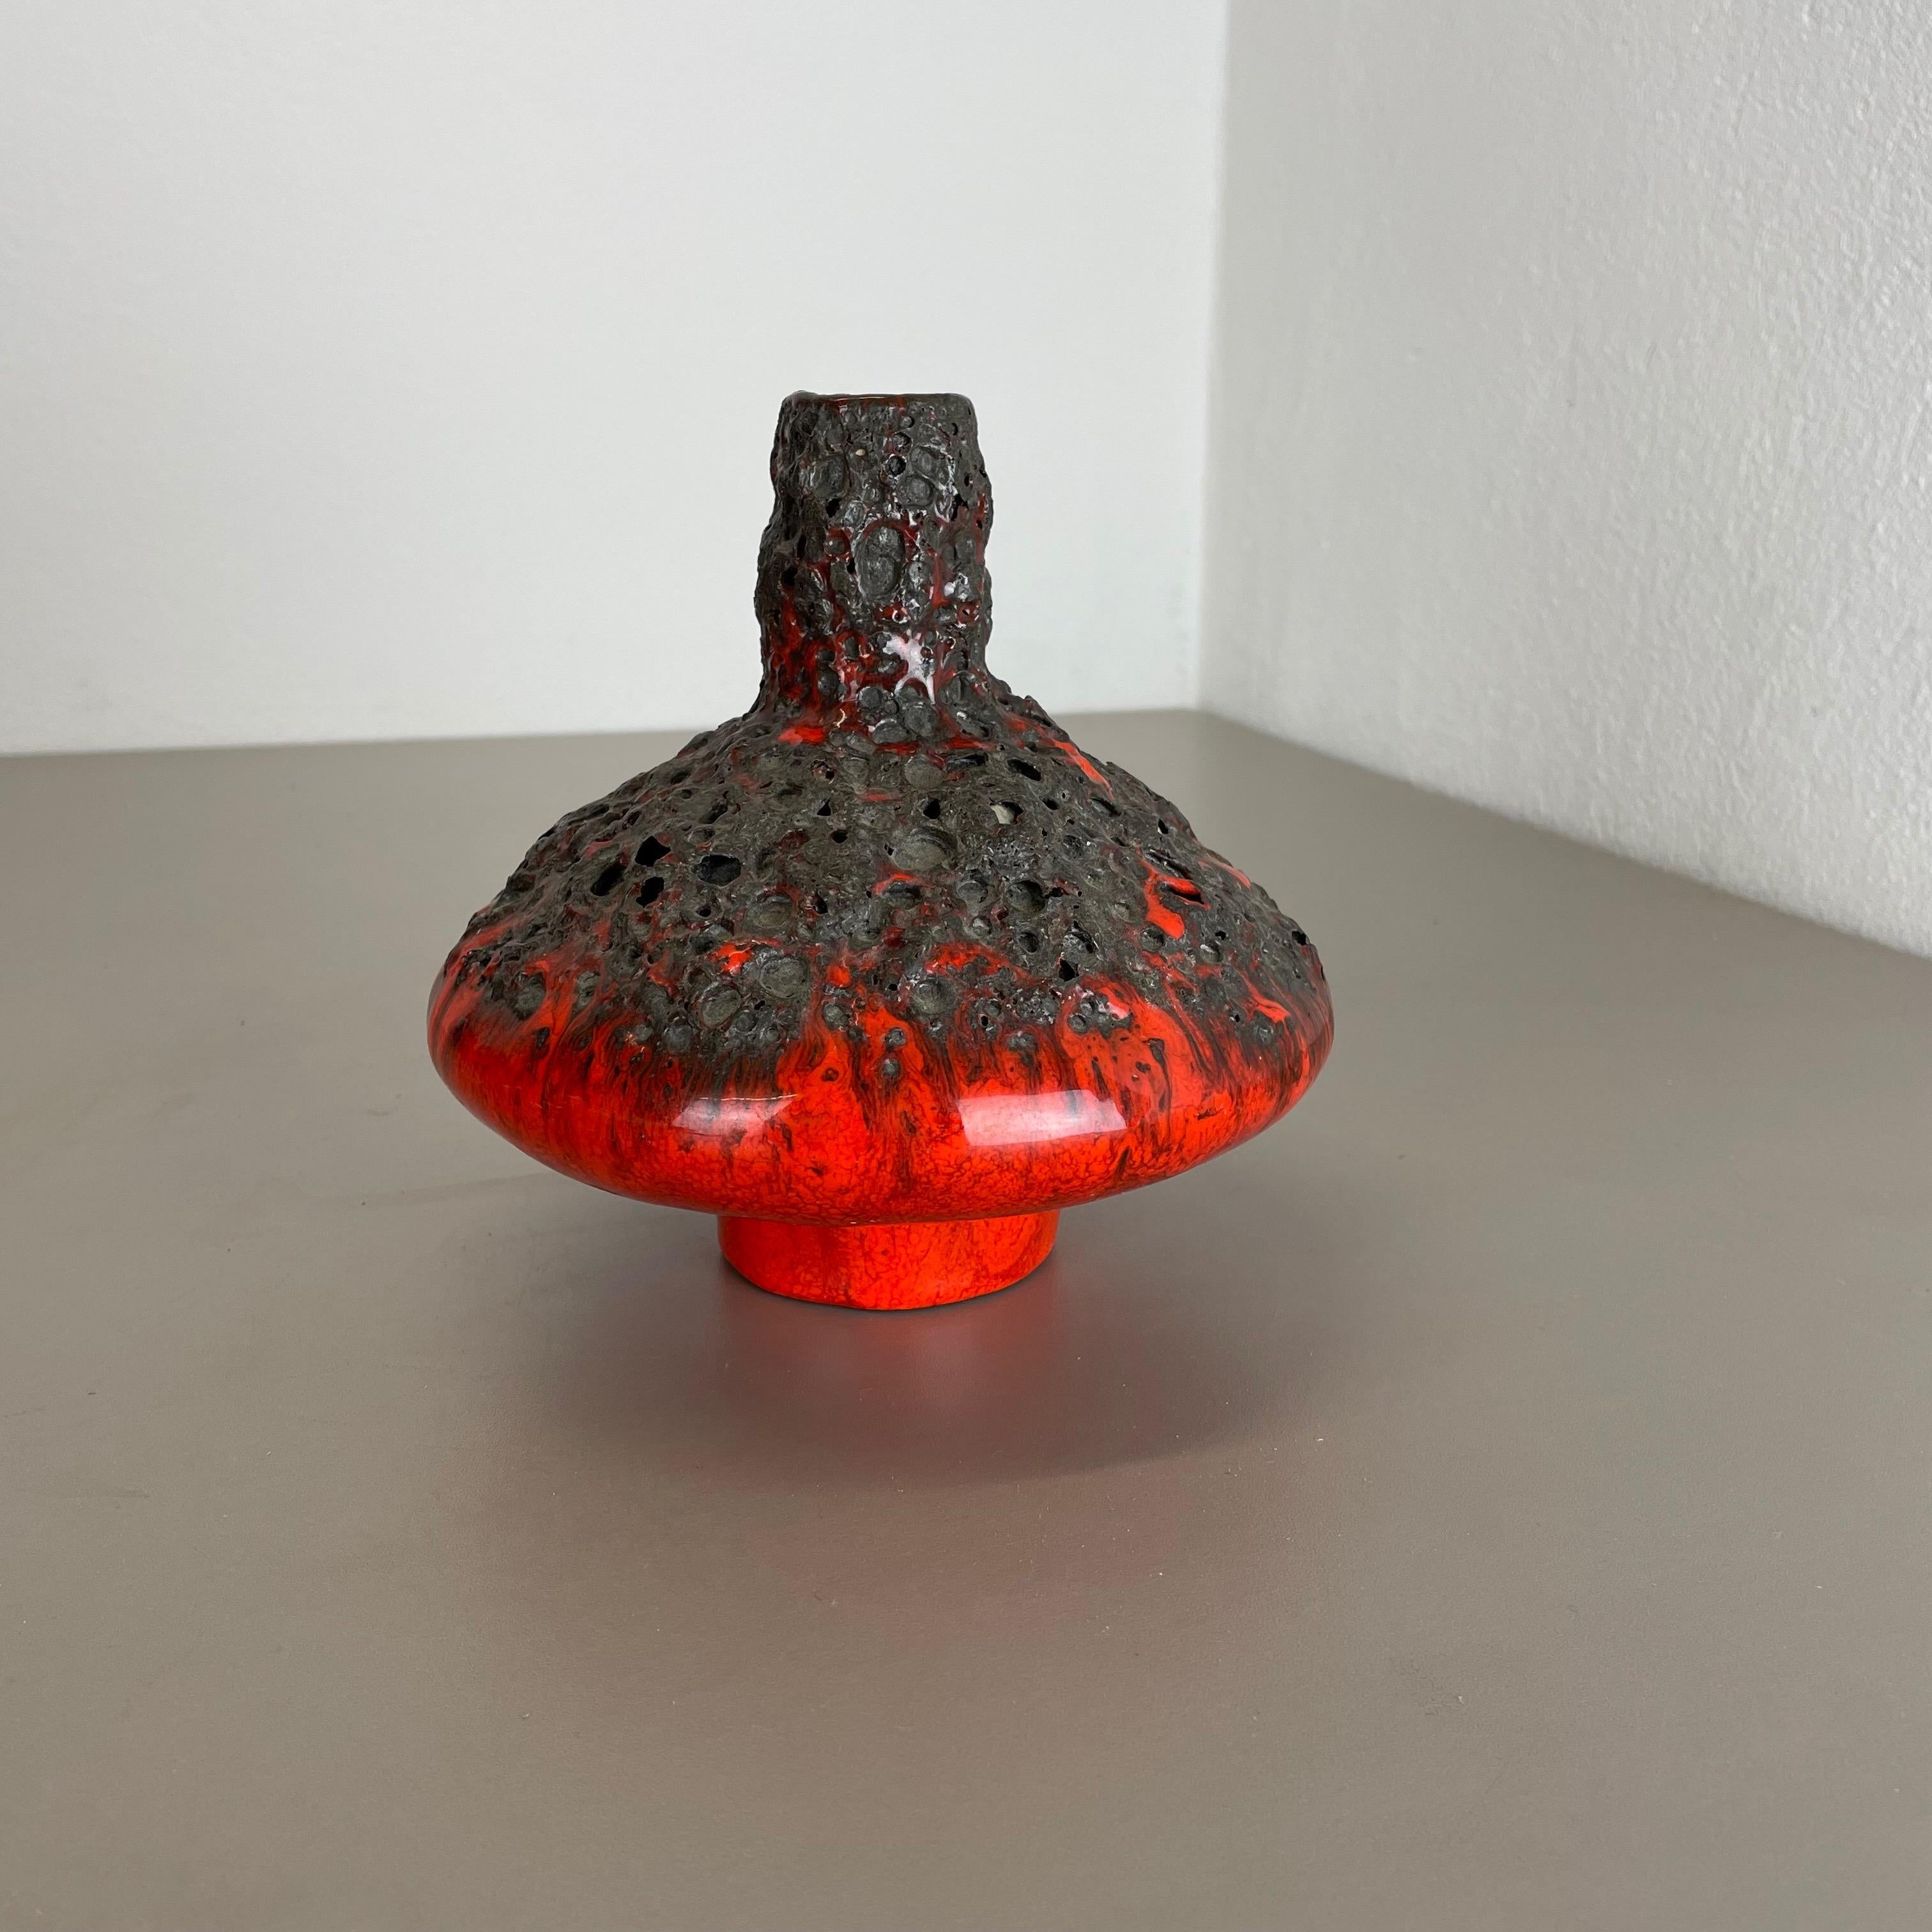 Artikel:

Keramisches Objekt


Designer und Produzent:

Otto Keramik, Deutschland



Jahrzehnt:

1970s


Dieses Original-Objekt von Studio Pottery wurde von Otto Keramik in den 1970er Jahren in Deutschland entworfen und hergestellt. Sie ist aus